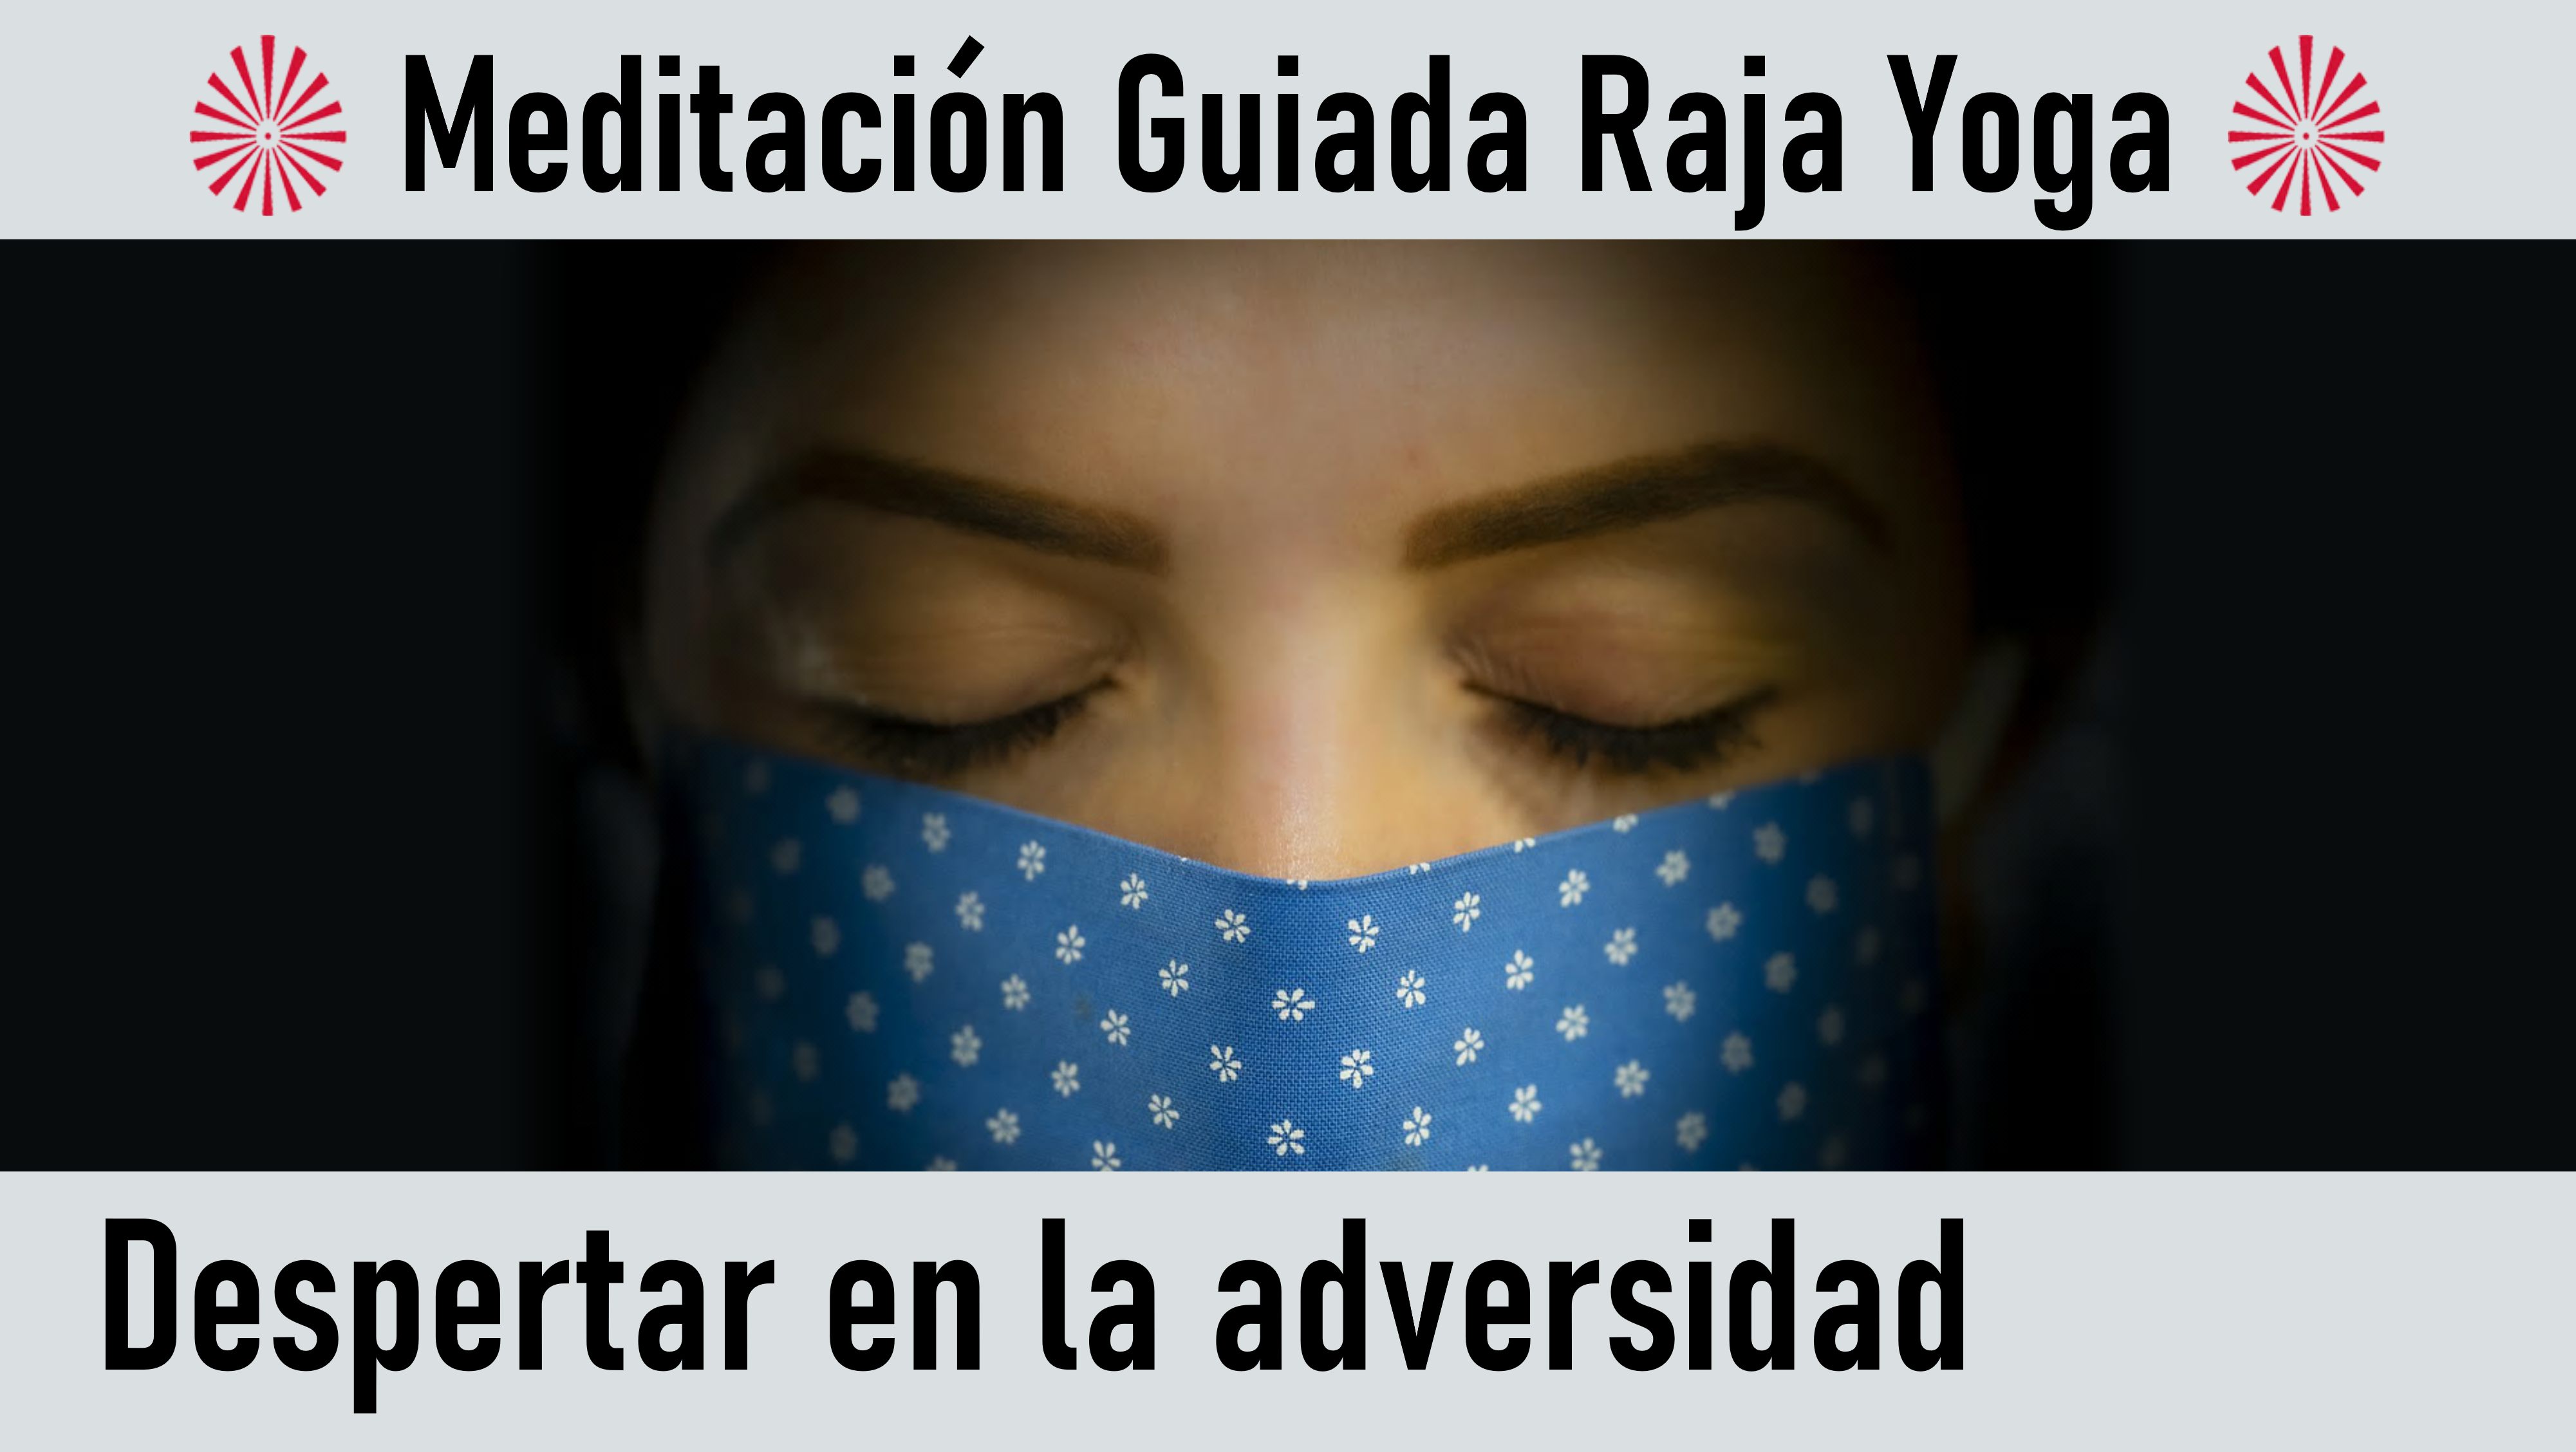 Meditación Raja Yoga: Despertar en la adversidad (9 Agosto 2020) On-line desde Valencia